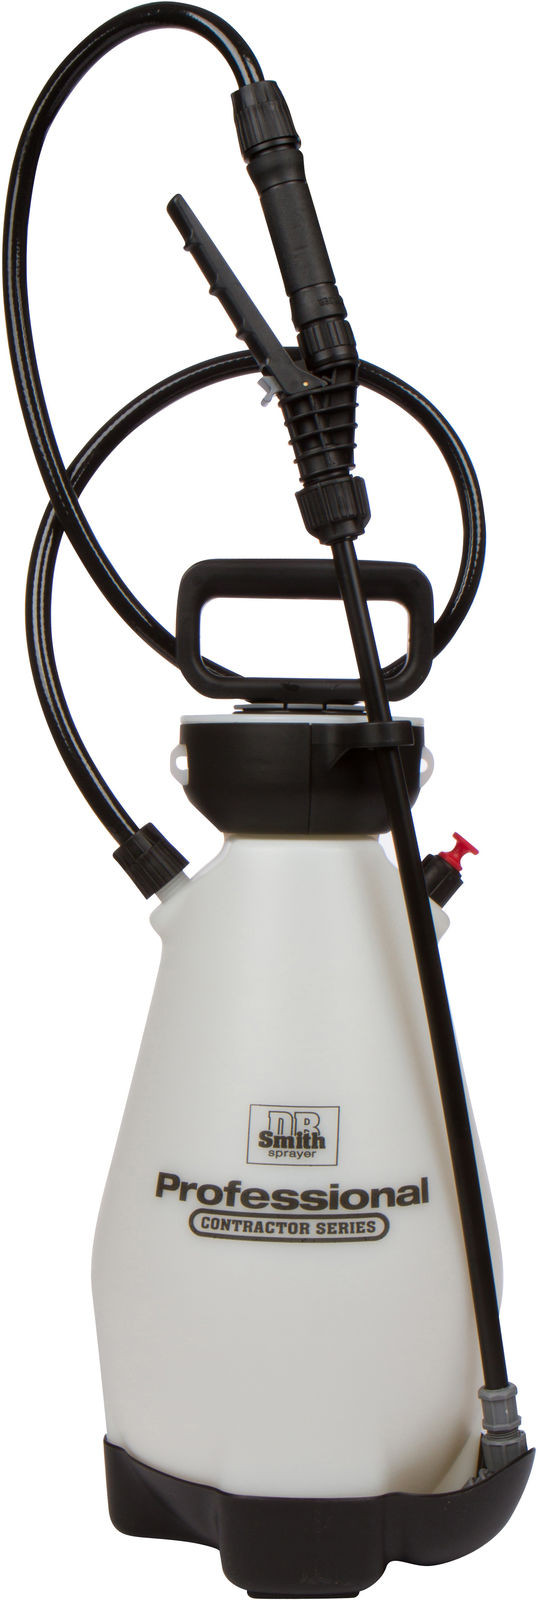 Smith Professional&trade; 2-Gallon Compression Sprayer 190361